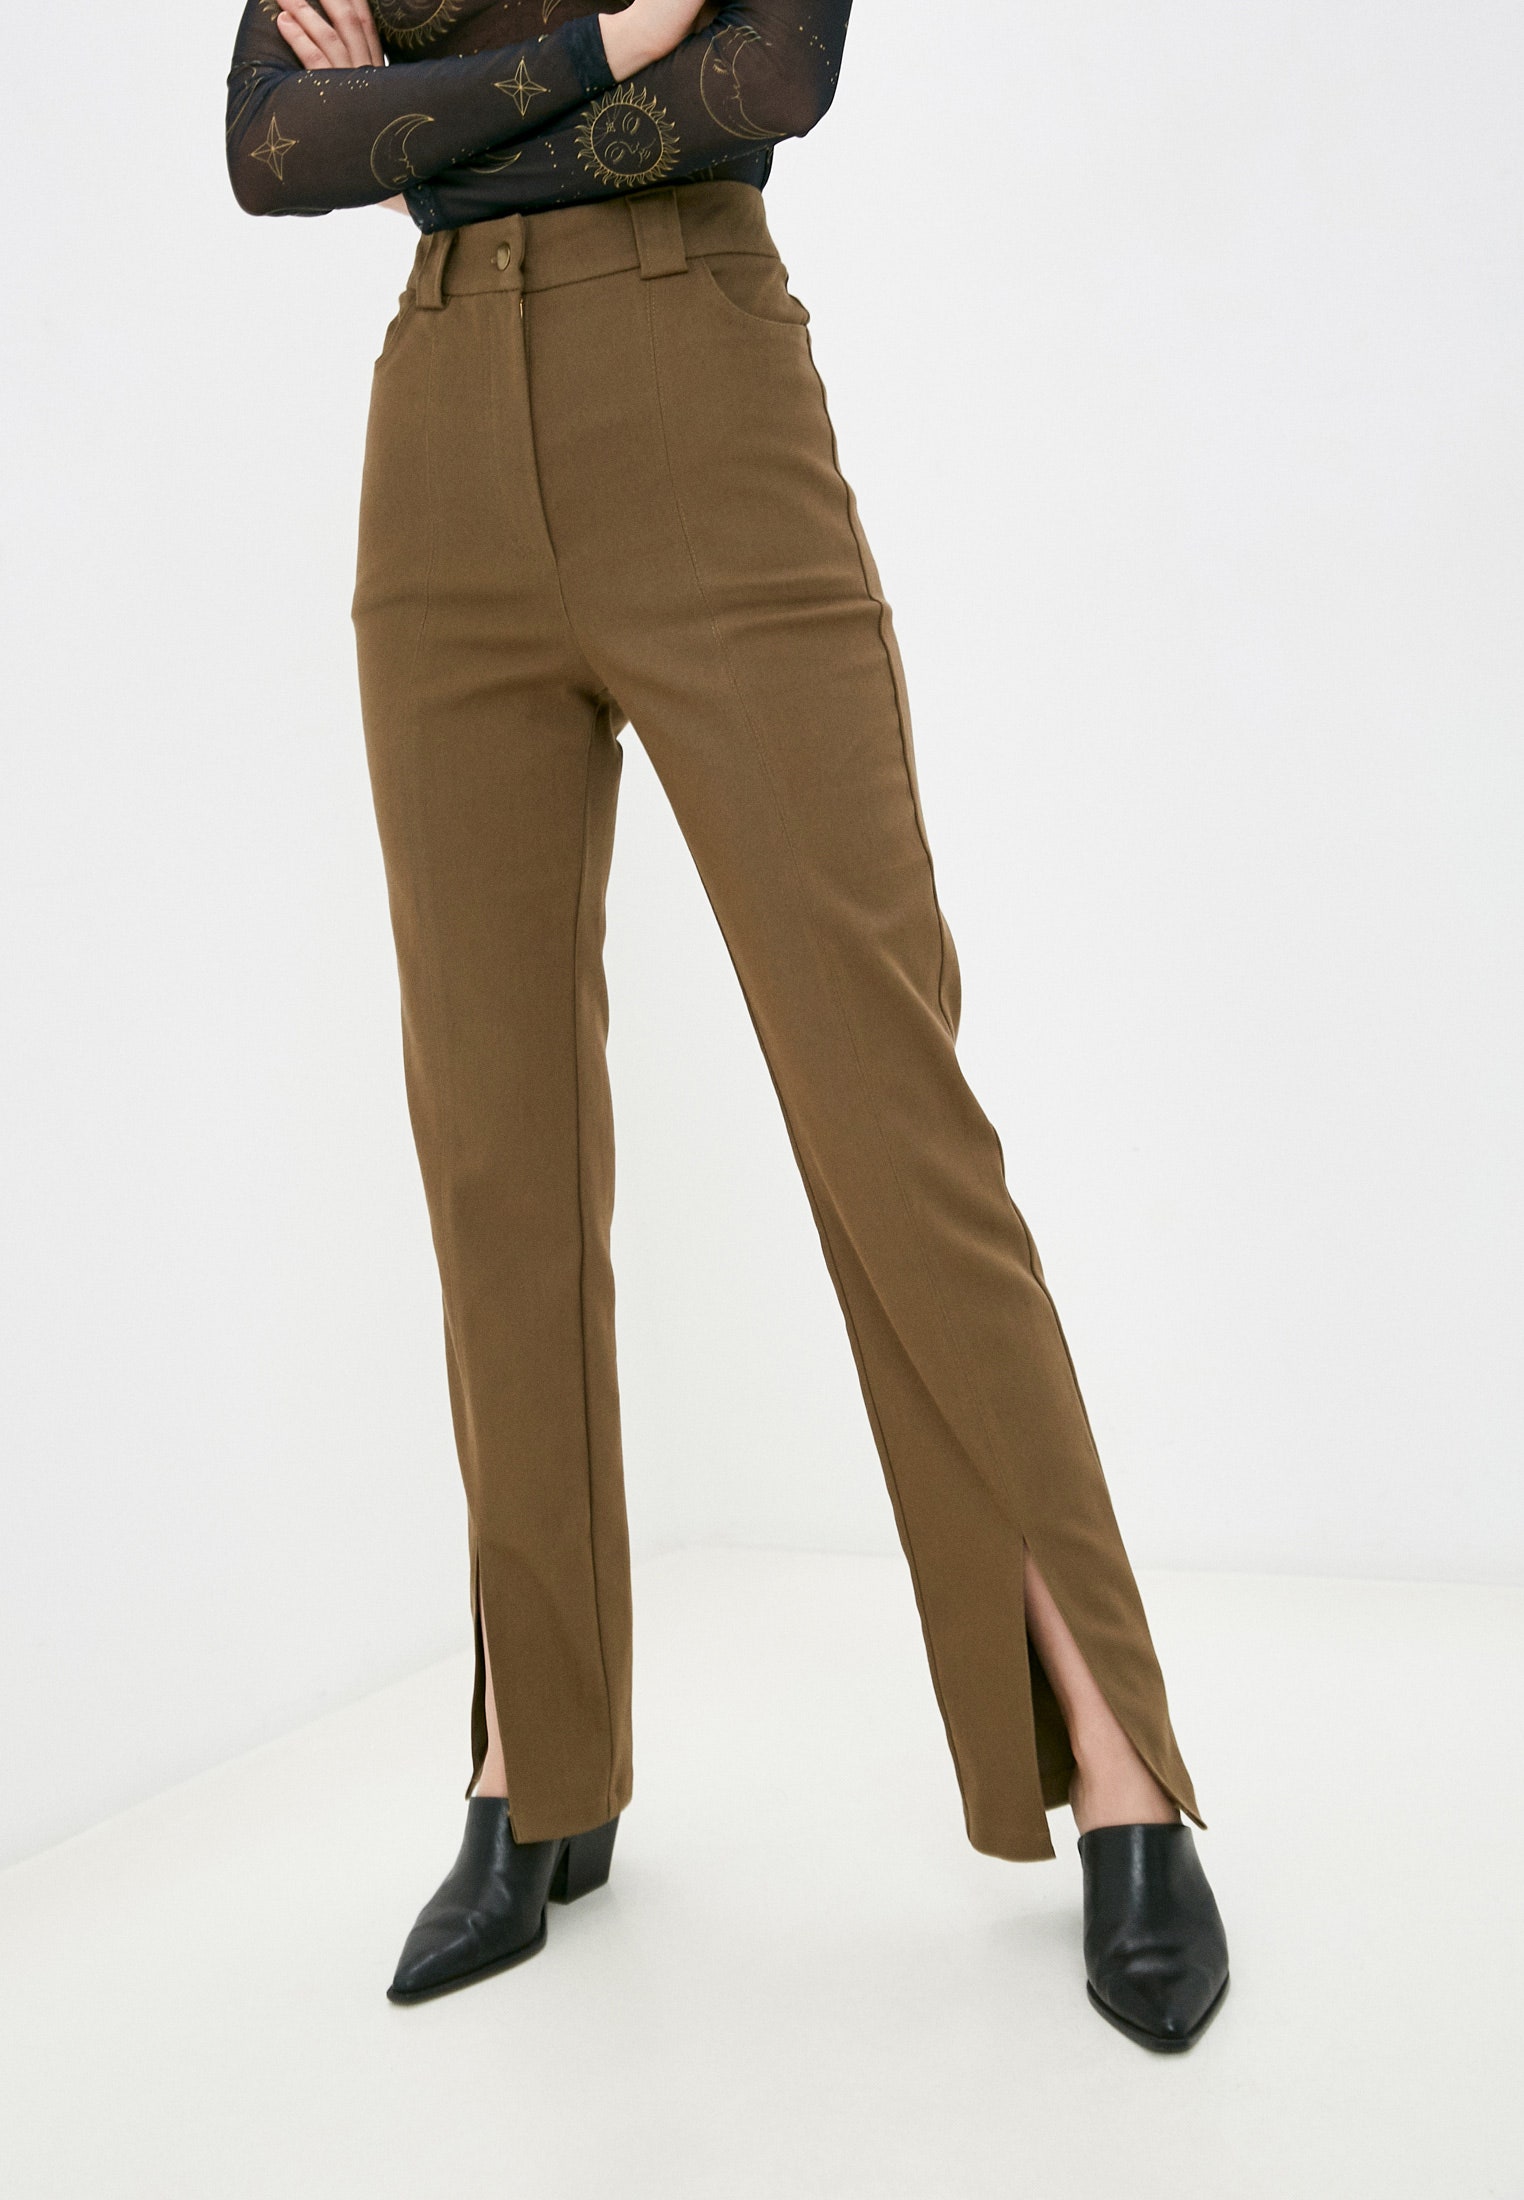 Это тренд брюки с разрезами — самый изящный способ превратить простой образ в модный